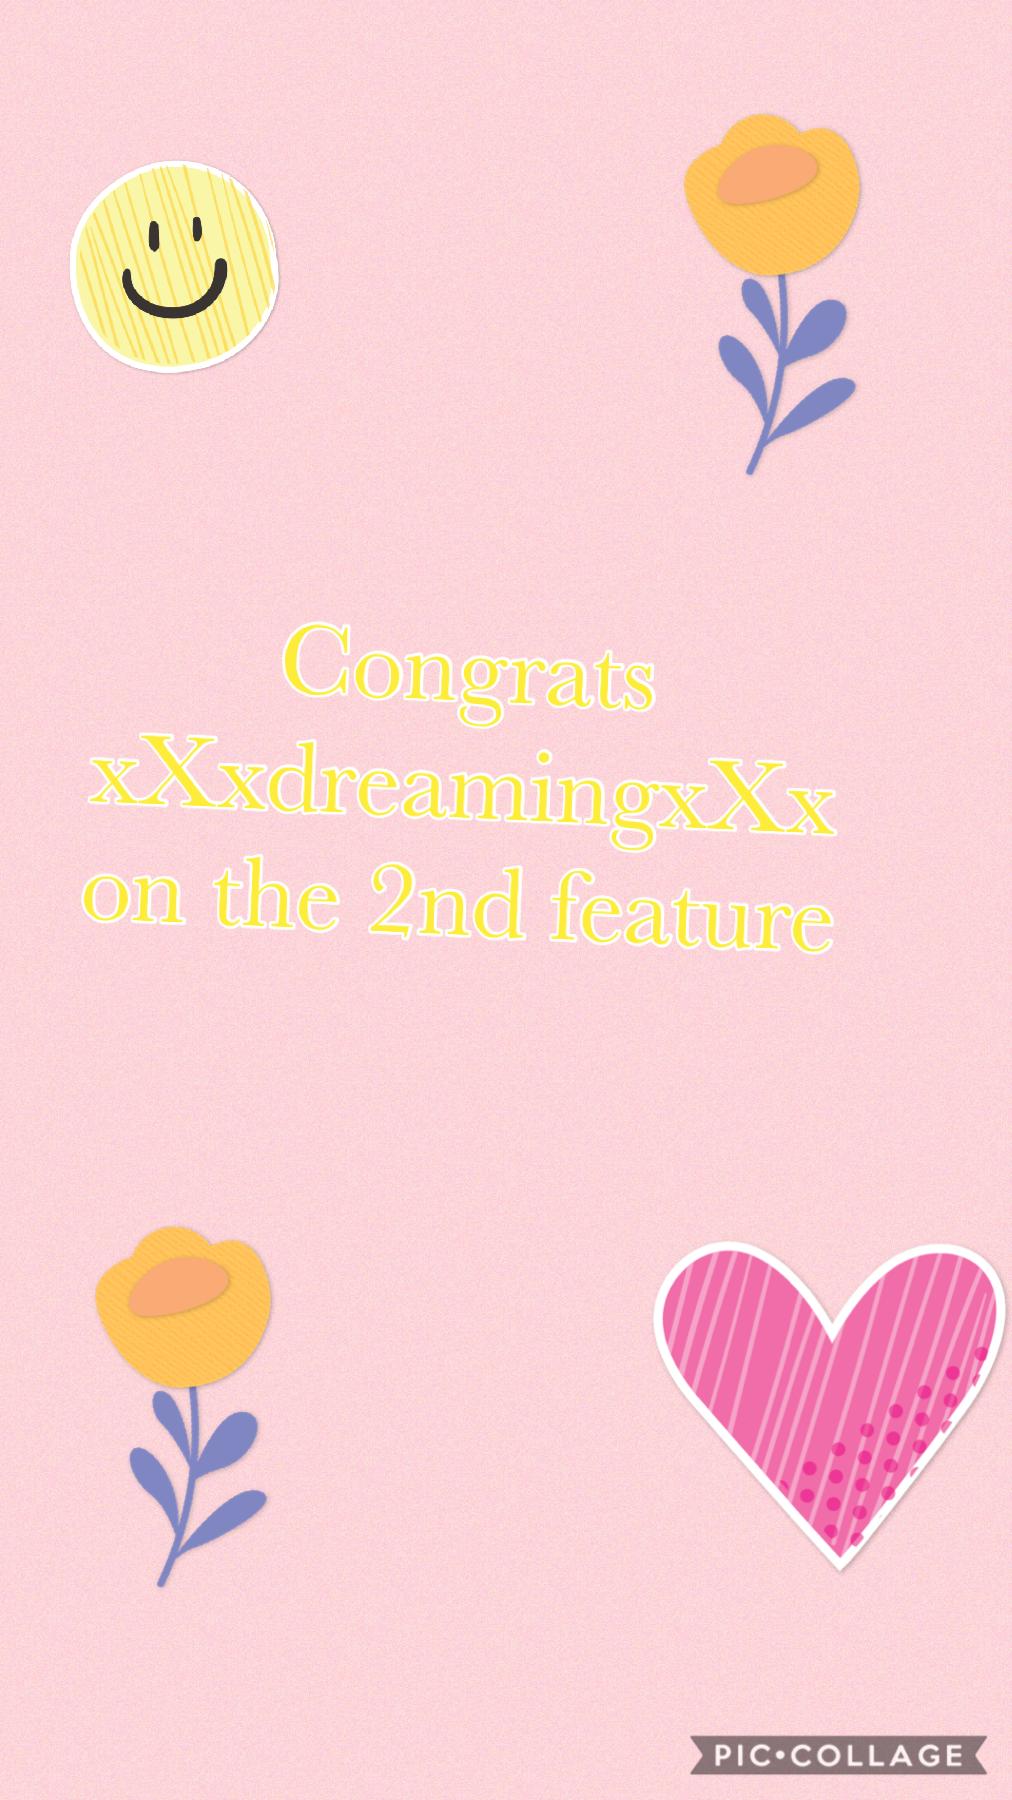 #Congrats xXxdreamingxXx 